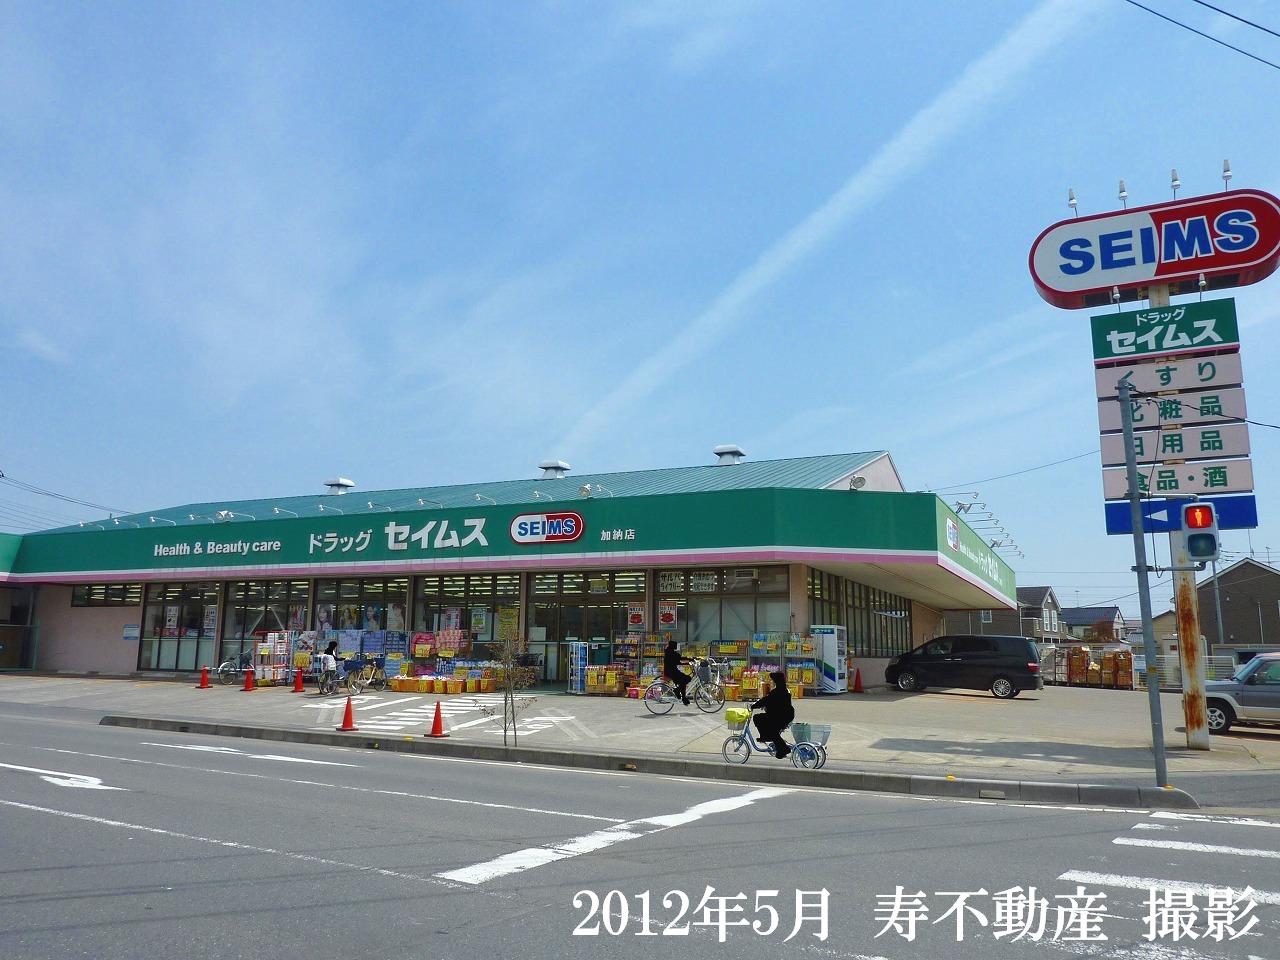 Dorakkusutoa. Drag Seimusu Kano shop 818m until (drugstore)